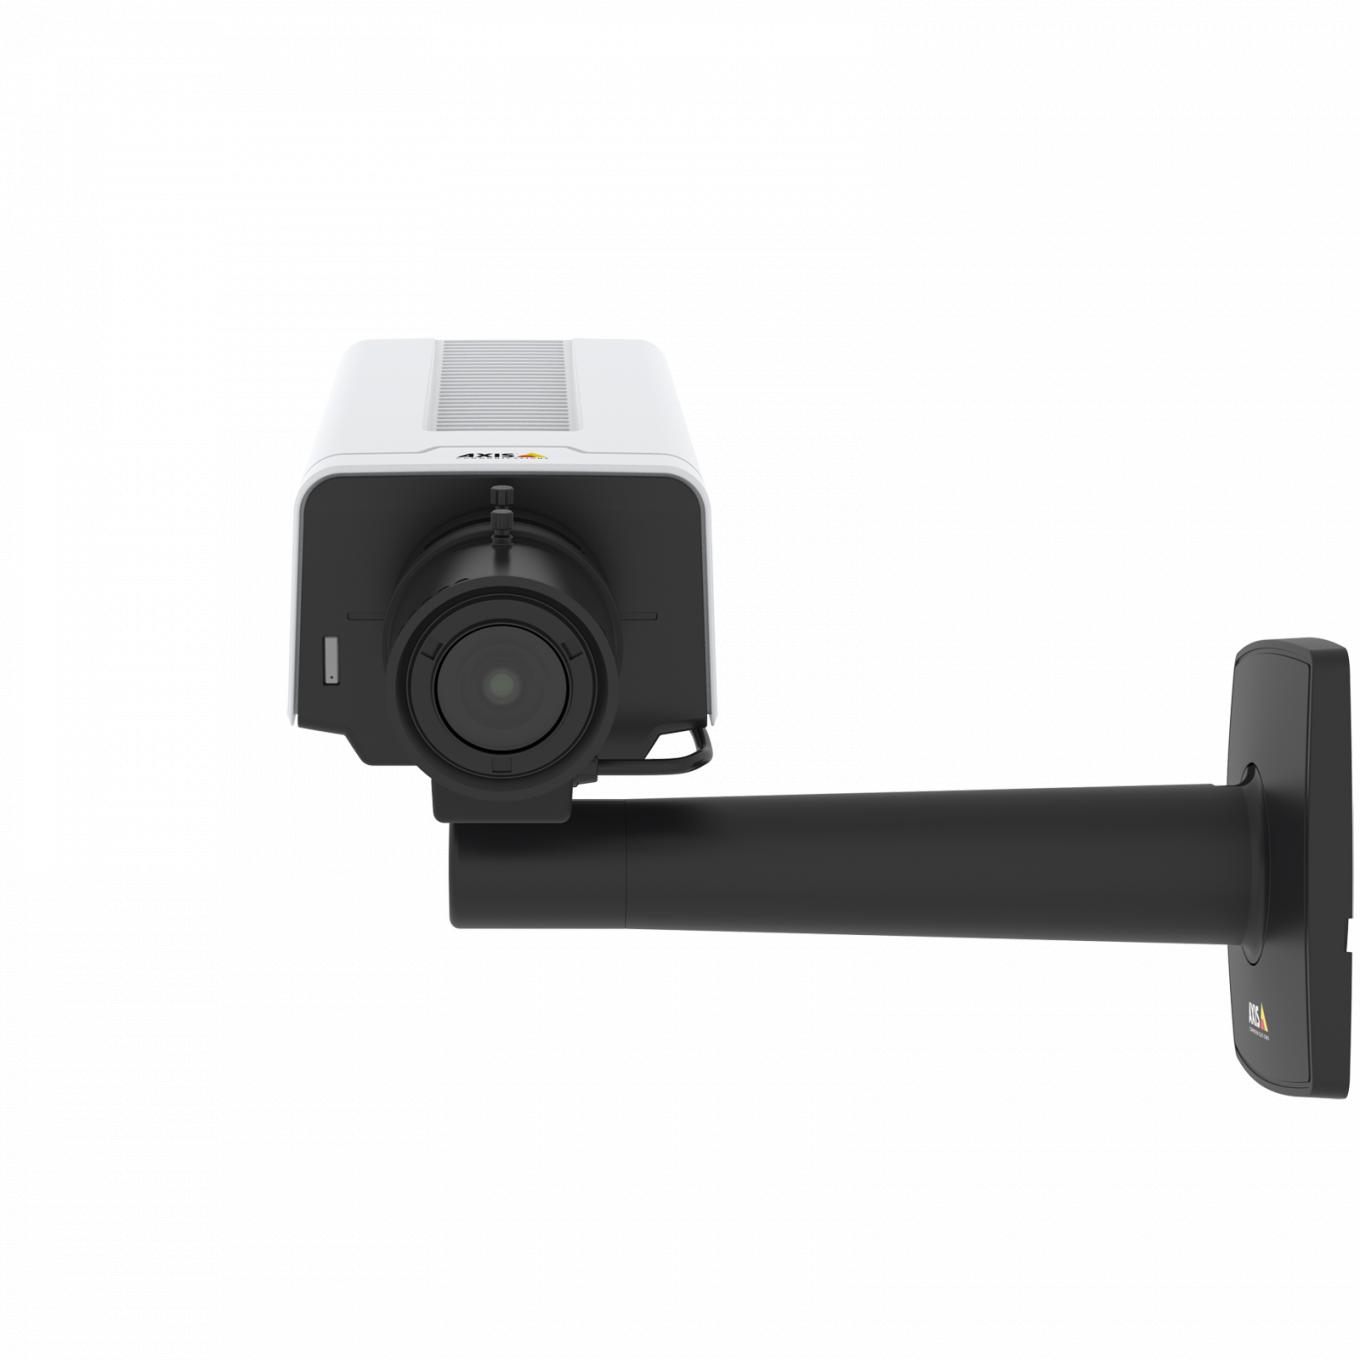 Die AXIS P1377 IP Camera verfügt über Lightfinder und Forensic WDR. Vorderansicht des Produkts.